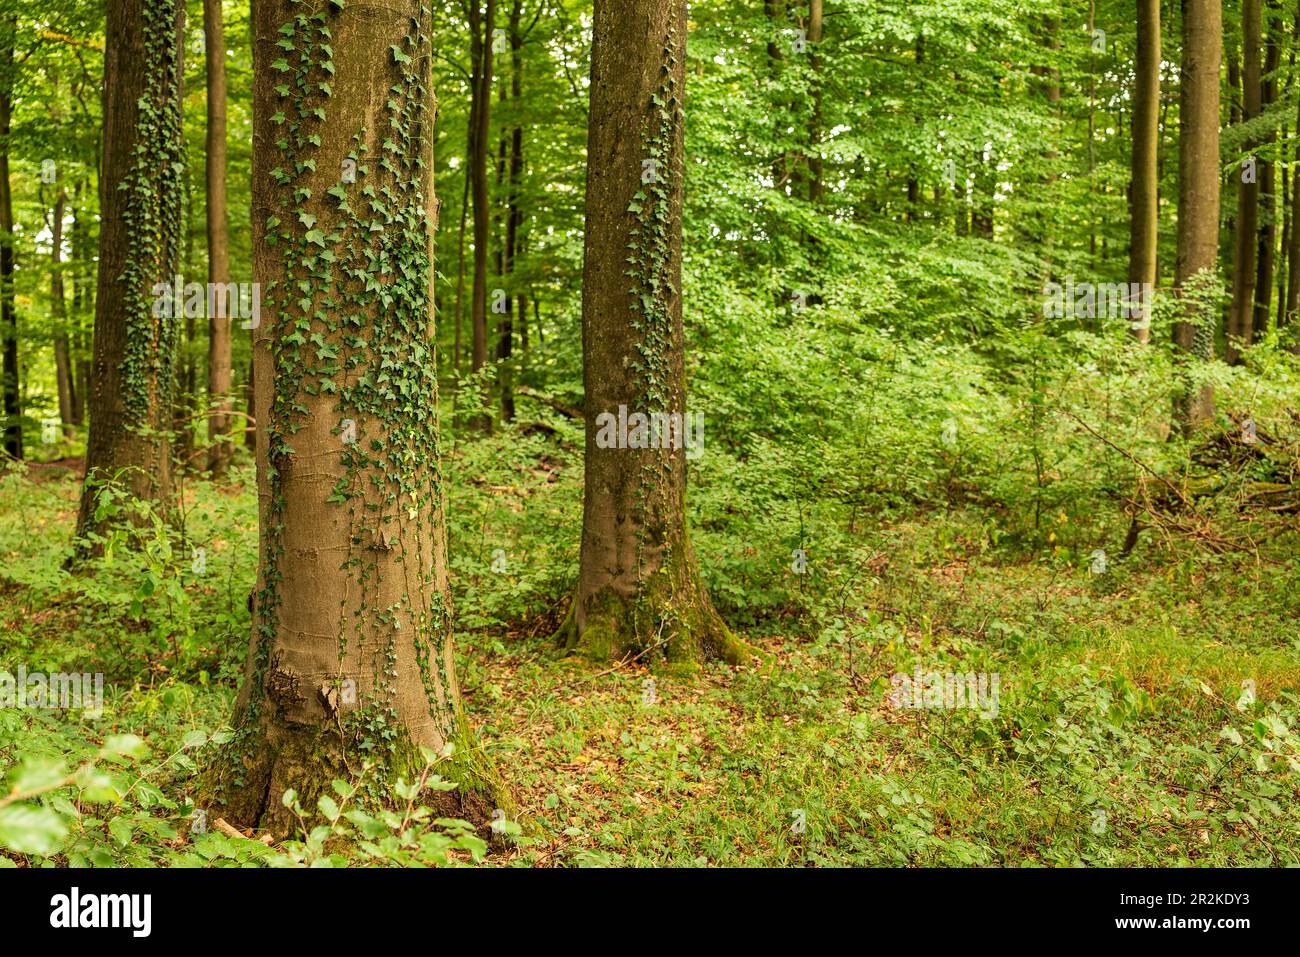 Efeu (Hedera Helix) klettert auf riesige alte Buchenstämme in einem üppig grünen Laubwald, Beckerberg, Barntrup, Teutoburg Wald, Deutschland Stockfoto